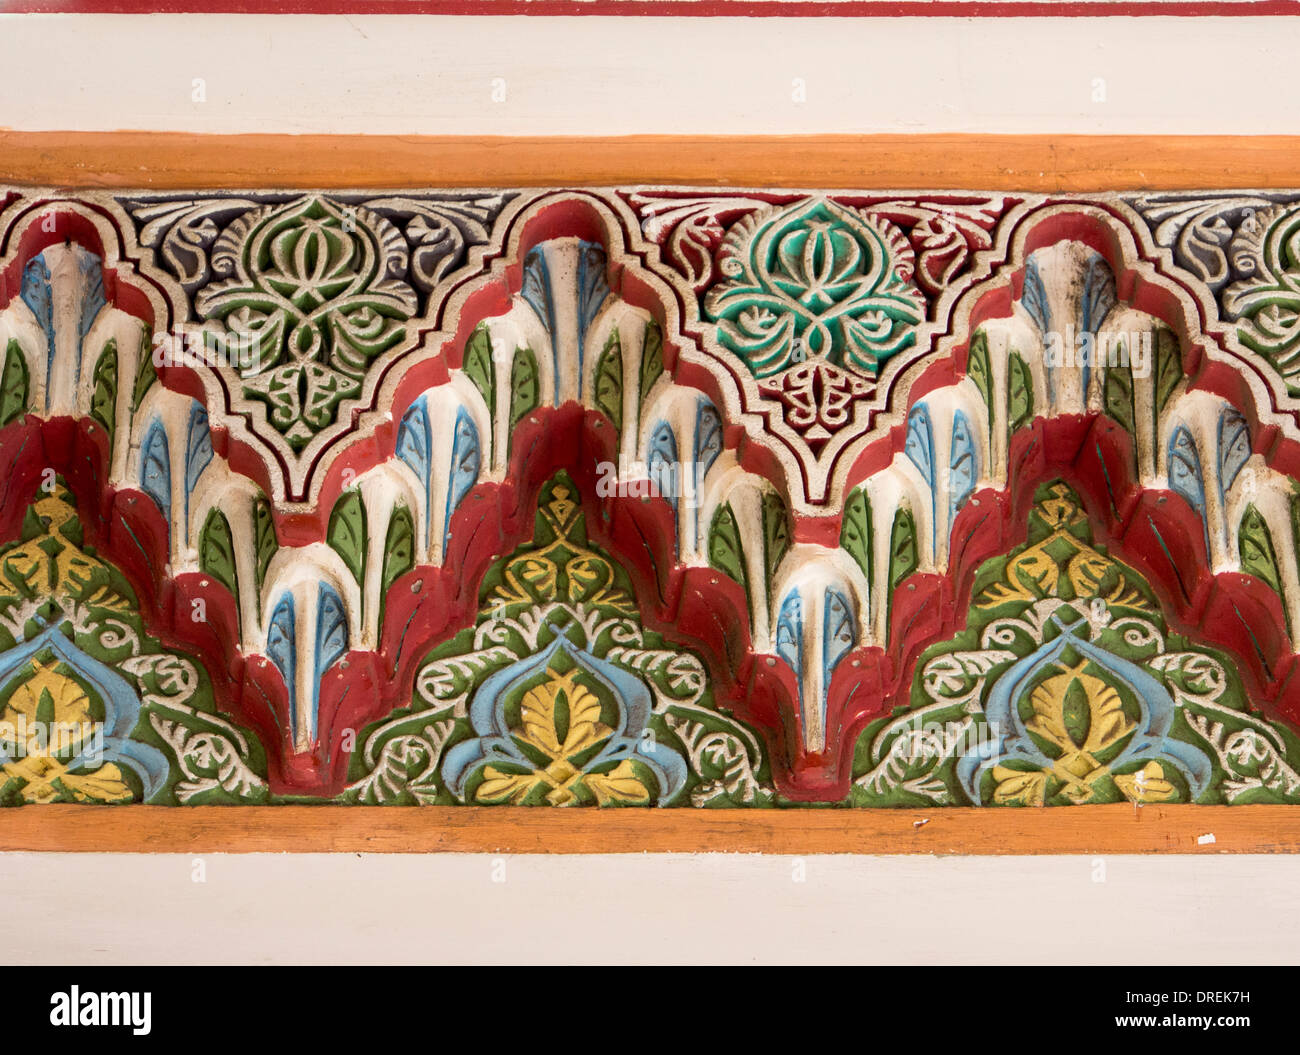 Una banda di intagliato e gesso dipinto adorna la facciata di un edificio in Tangeri Foto Stock